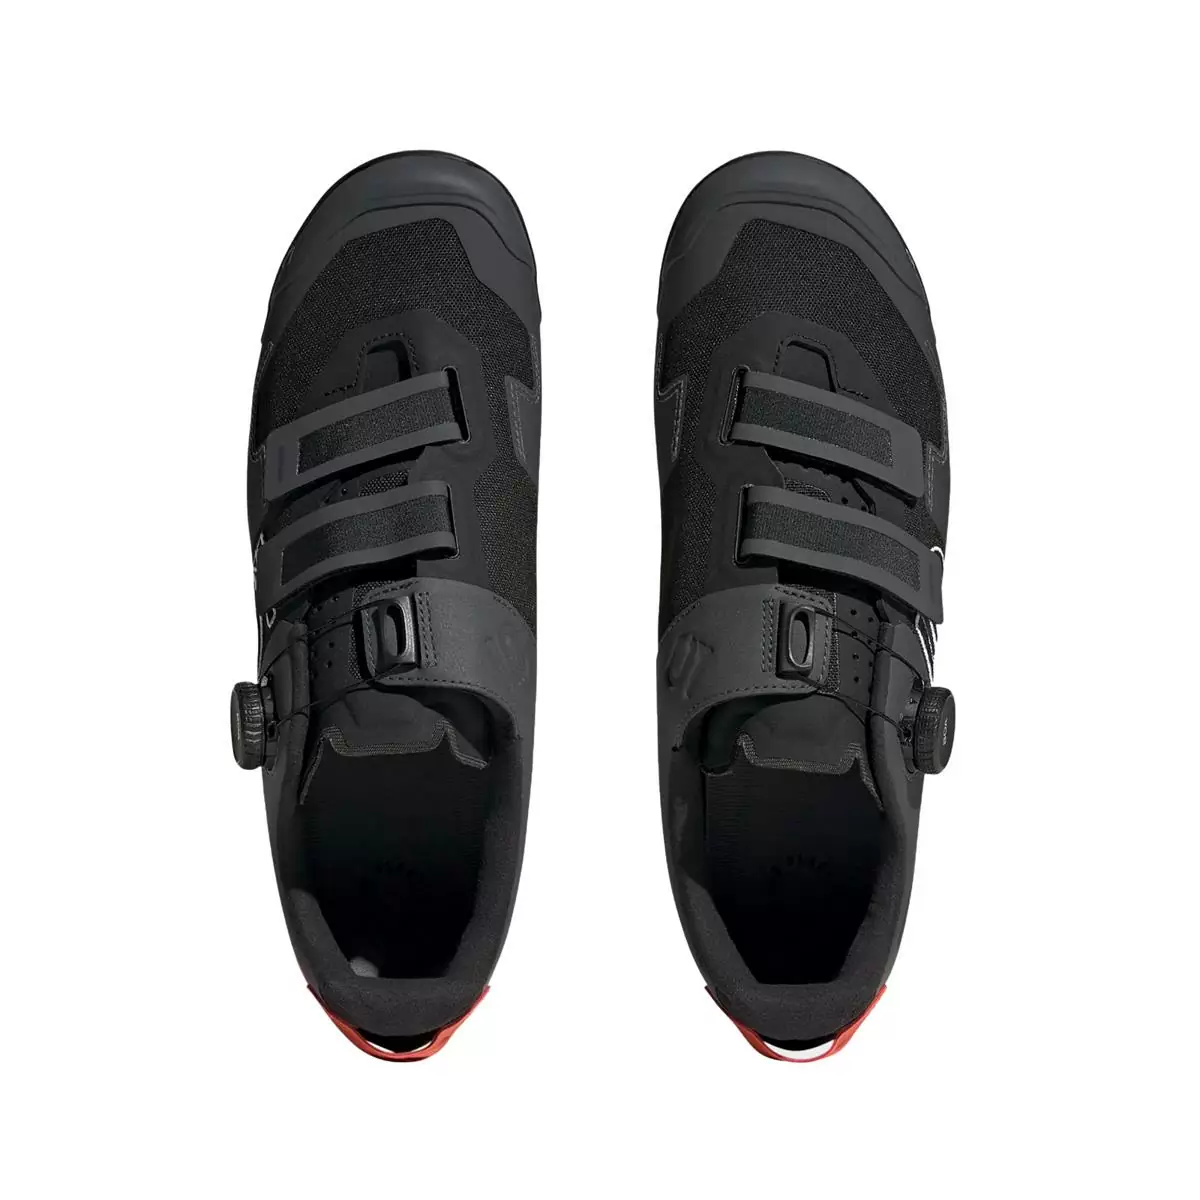 Clip 5.10 Kestrel Boa MTB Shoes Black/Orange Size 43 #3